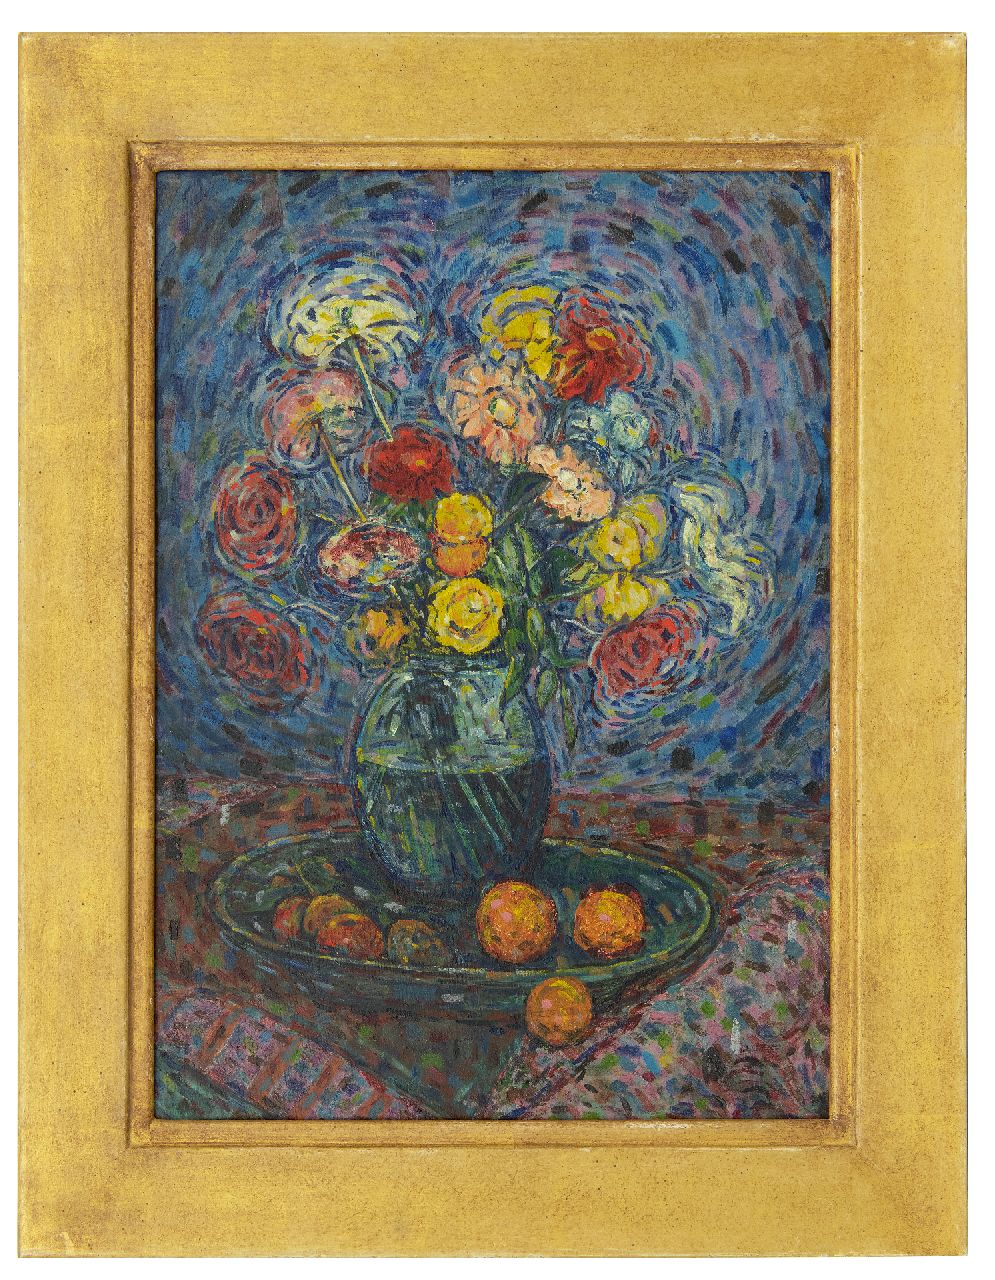 Rijn N.P.Q. van | Nicolaas Petrus Quirinus 'Nico' van Rijn, Stilleben mit Blumen und Obst, Öl auf Holz 53,2 x 38,3 cm